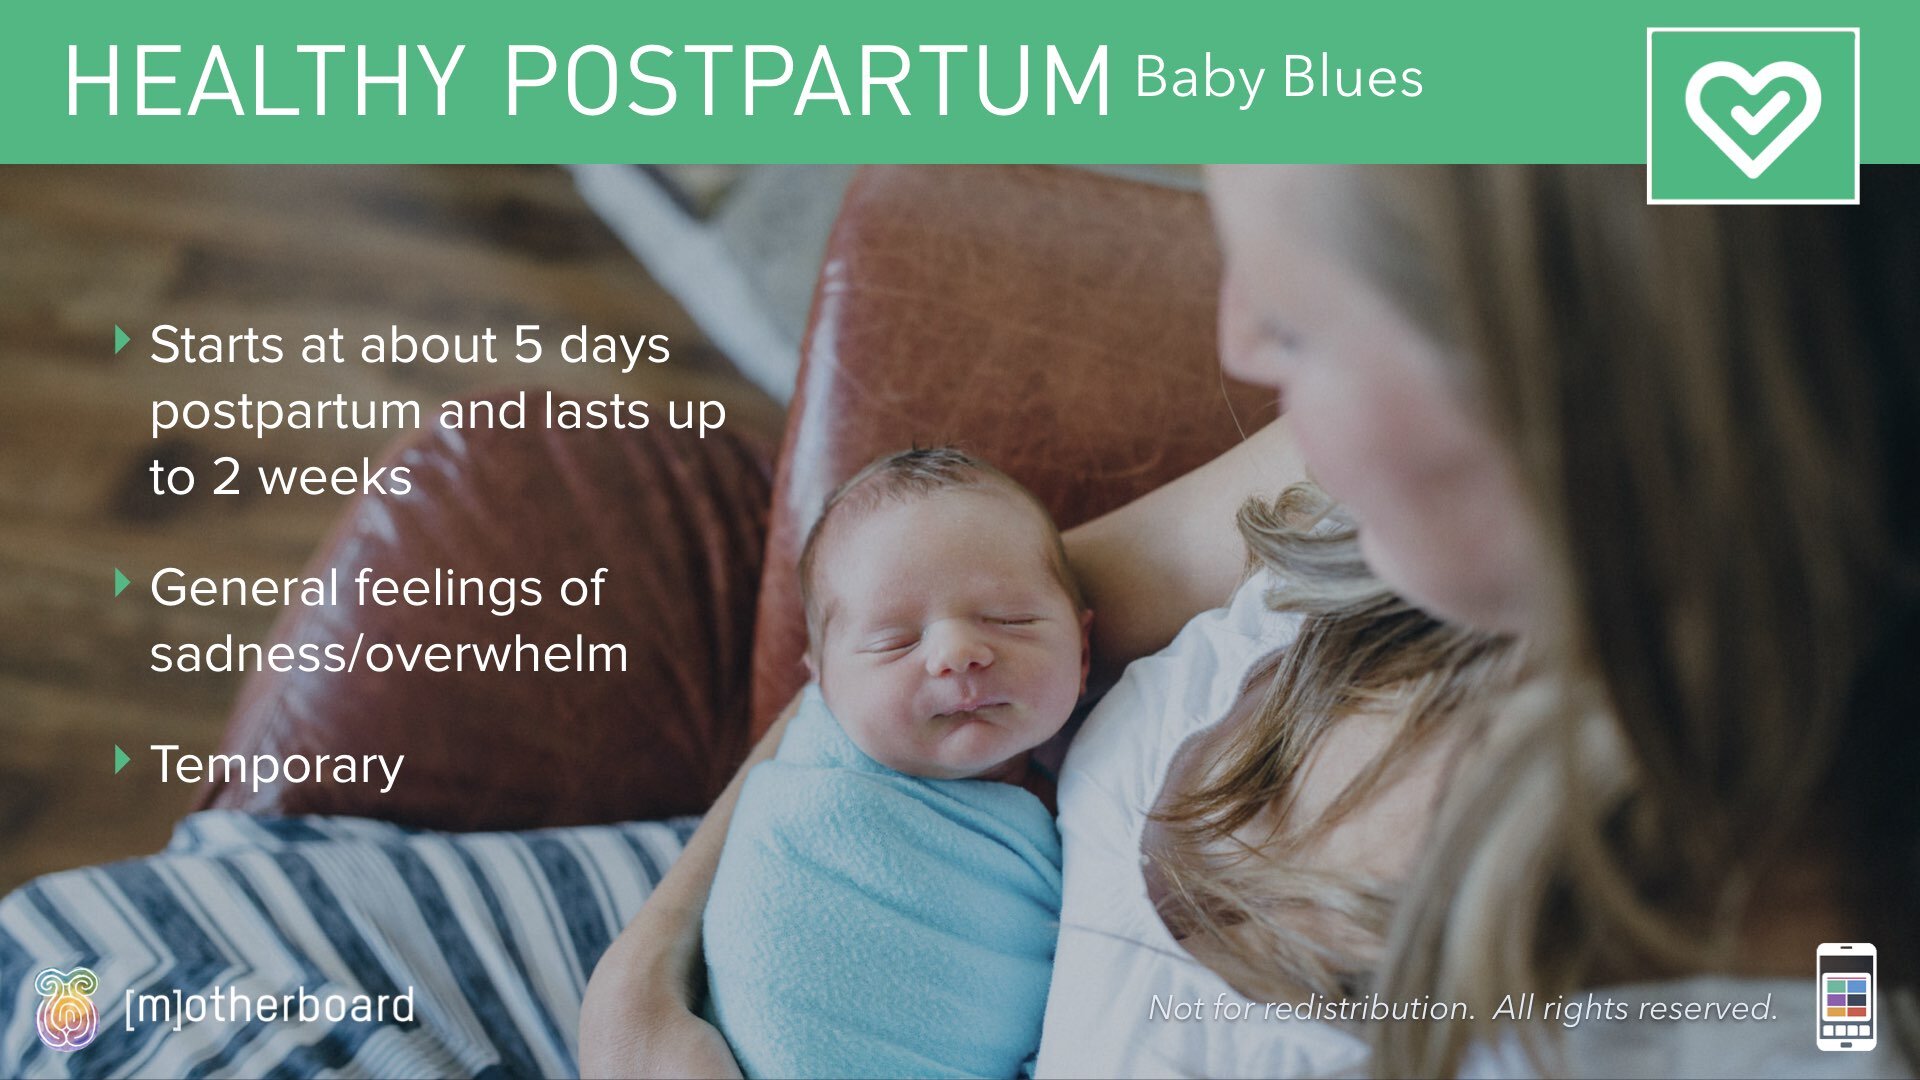 Slideshow Images - Postpartum - Normal vs Warning Signs.015.jpeg